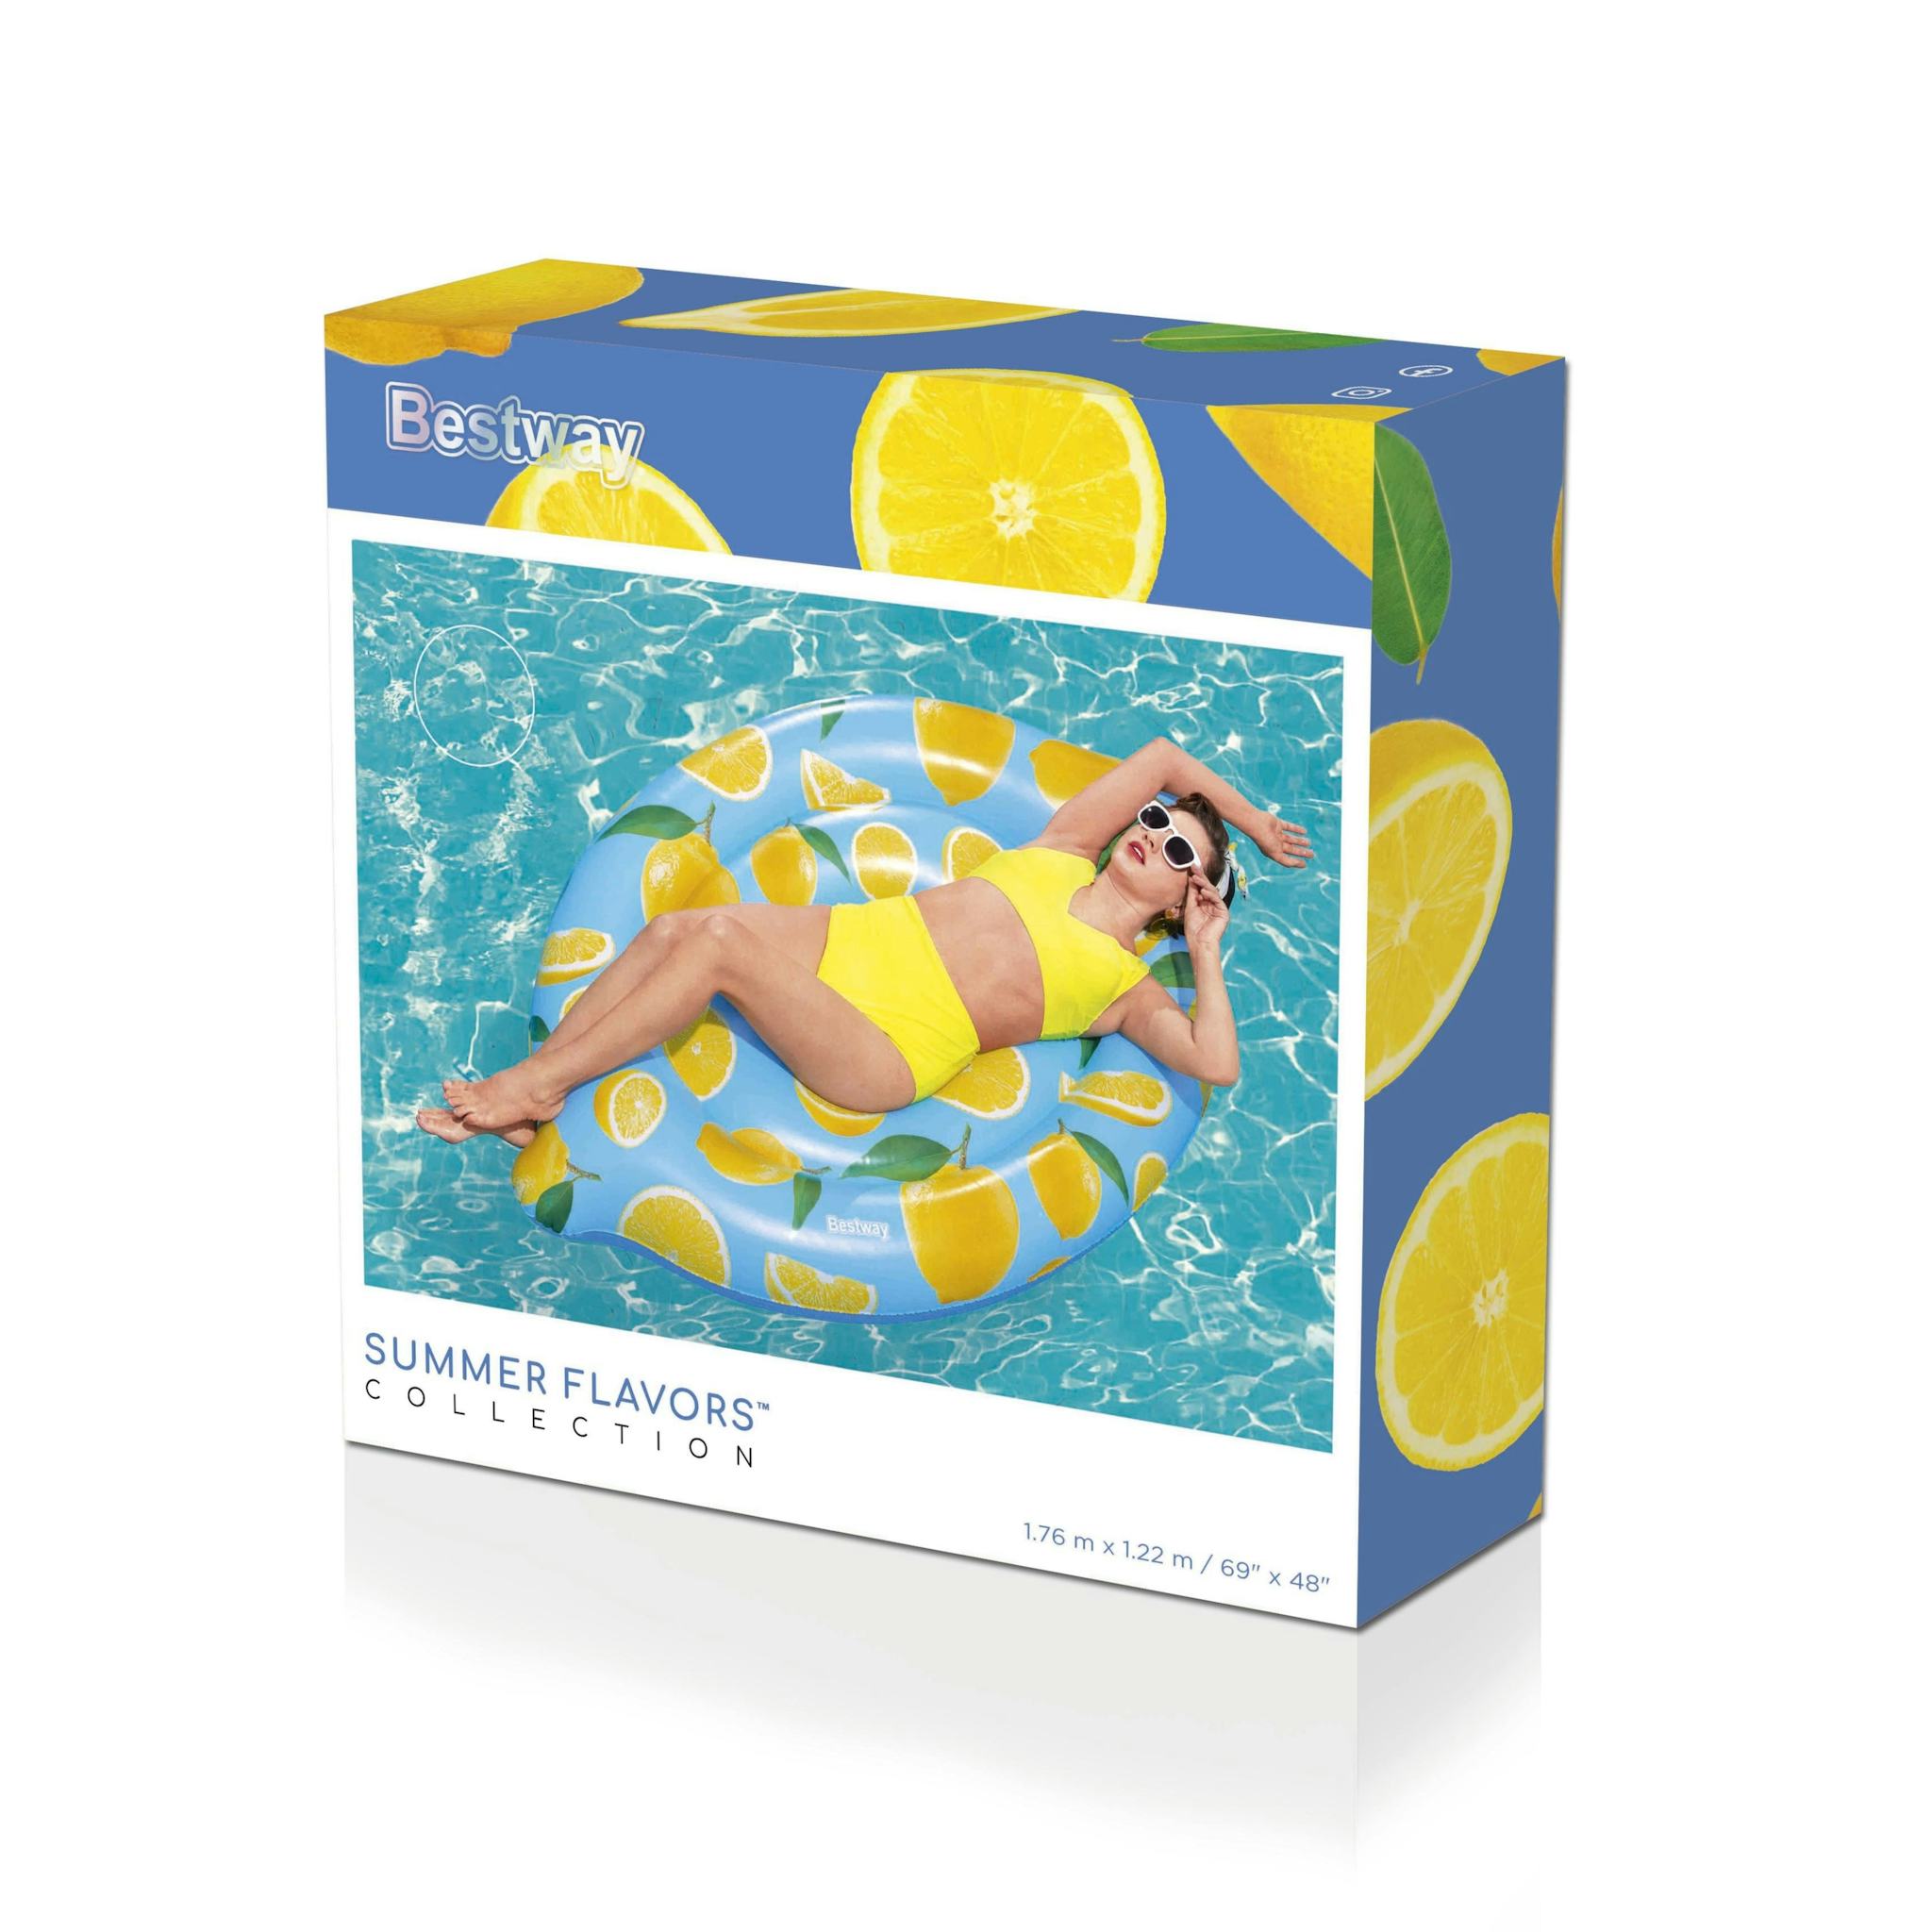 Bouées, matelas et jeux gonflables Ile gonflable parfumée citron Scentsational™ Lemon 176 x 123 cm Bestway 29